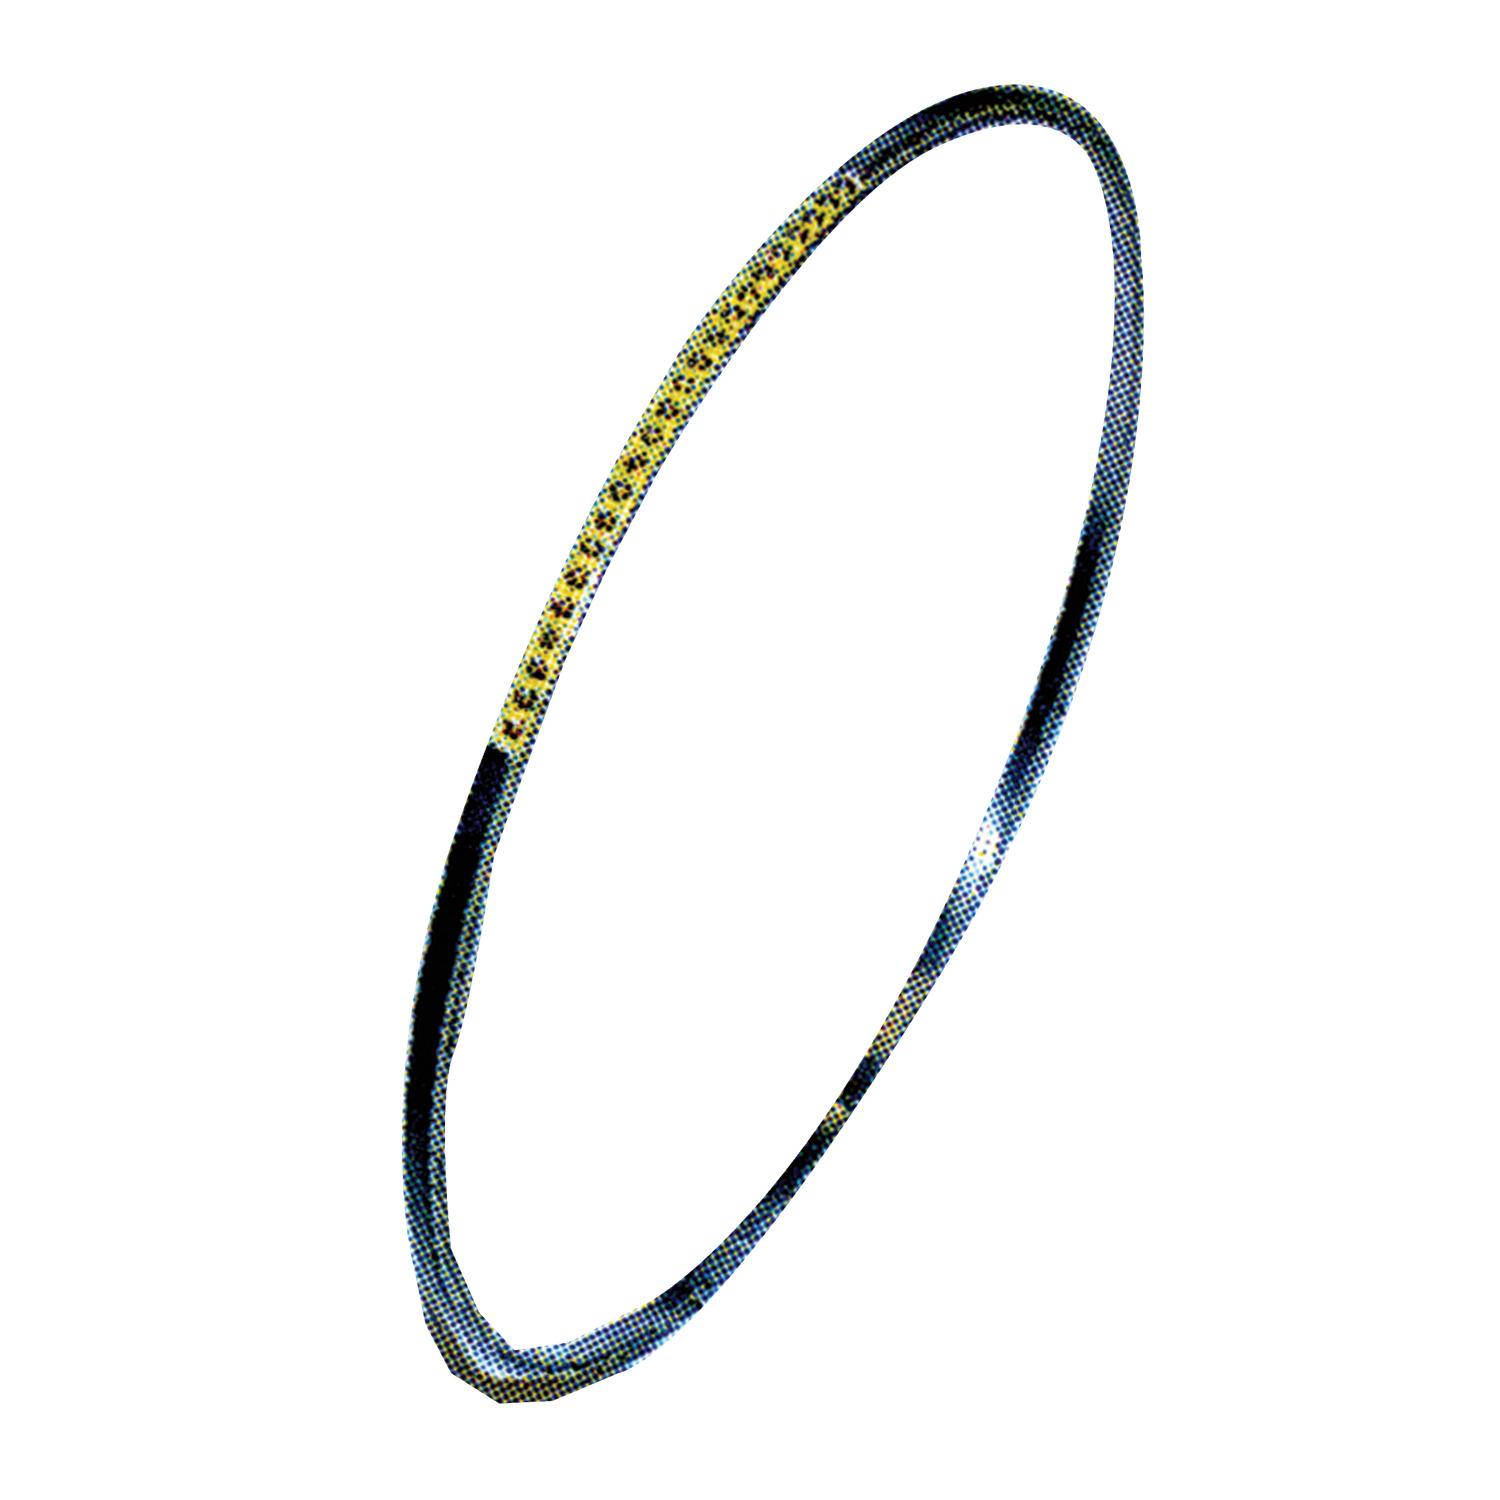 Product R4204.1, Split Bearing - Supra Slim thin ring bearing type / 